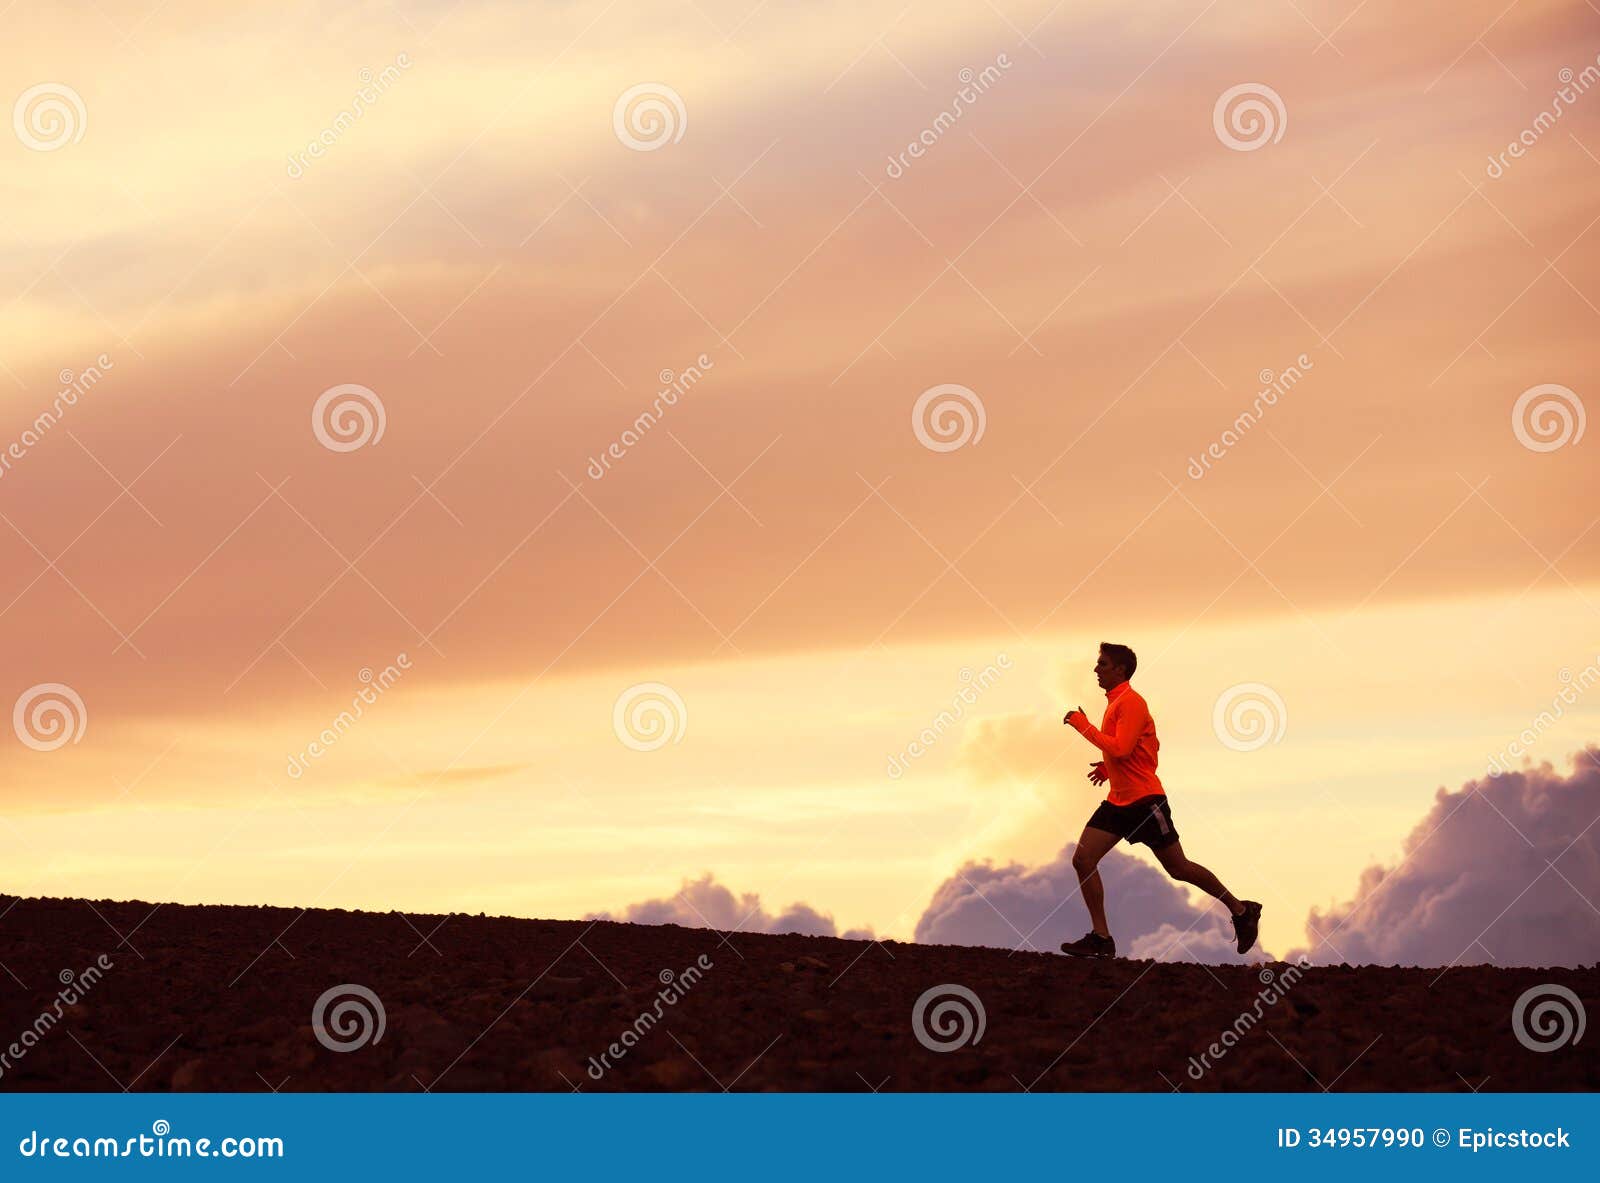 Αρσενική σκιαγραφία δρομέων, που τρέχει στο ηλιοβασίλεμα. Αρσενική σκιαγραφία δρομέων, άτομο που τρέχει στο ηλιοβασίλεμα, ζωηρόχρωμος ουρανός ηλιοβασιλέματος